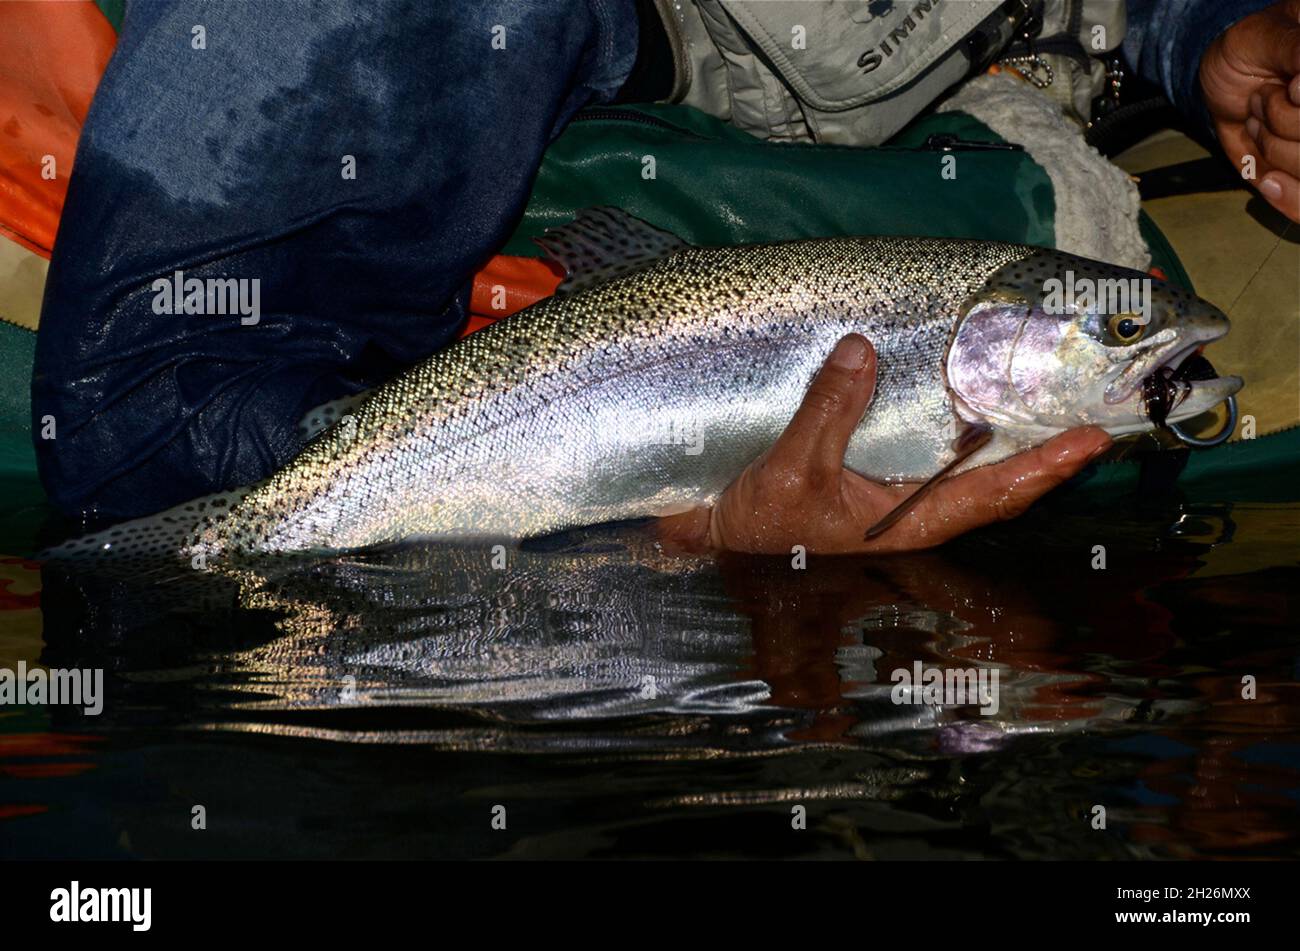 Duck Valley Reservation, USA. September 2014. Fische wie diese Regenbogenforelle haben einen vollen Sommer zu wachsen, so dass durchschnittliche Größen neigen dazu, im Herbst größer zu sein. (Foto von Roger Phillips/Idaho Statesman/TNS/Sipa USA) Quelle: SIPA USA/Alamy Live News Stockfoto